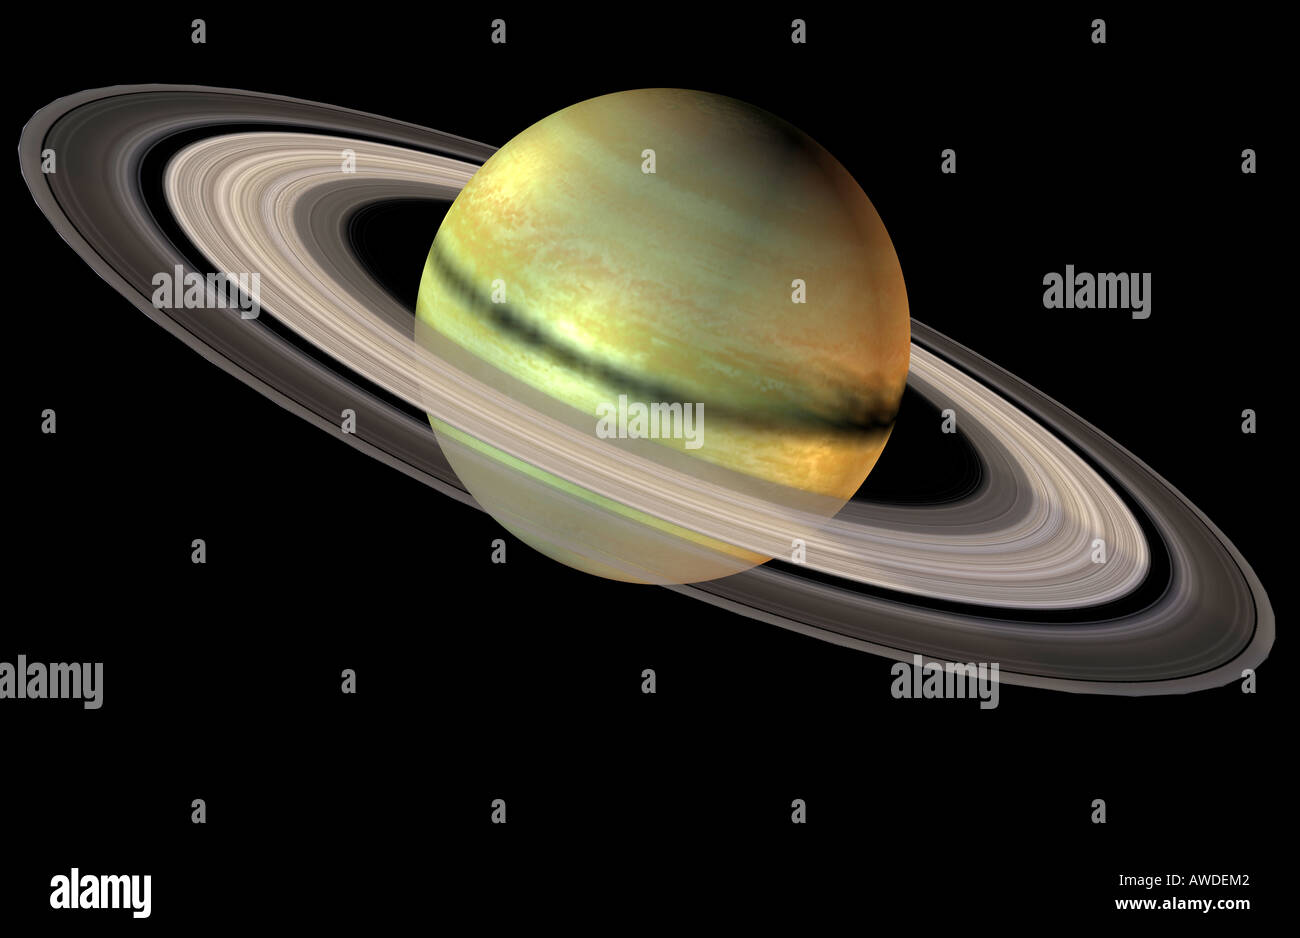 ¿Cuál es el segundo planeta más grande del sistema solar?